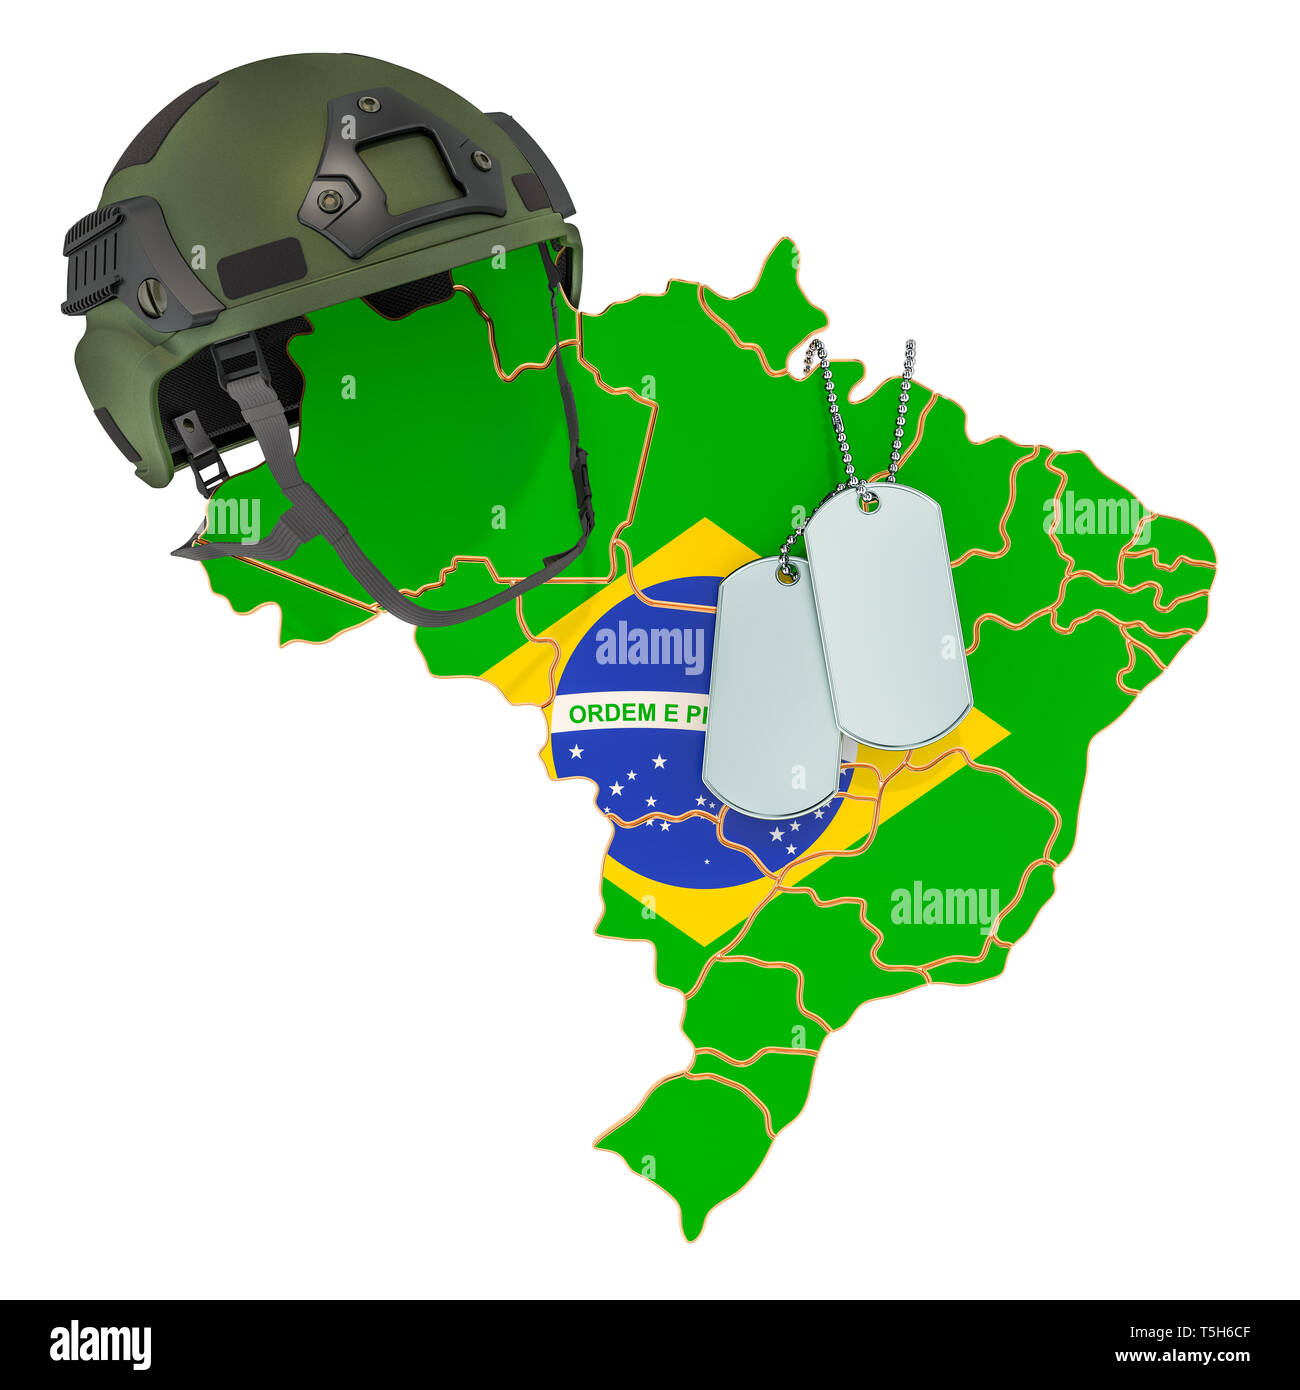 Brasilianische Militär, Armee oder Krieg Konzept. 3D-Rendering auf weißem Hintergrund Stockfoto